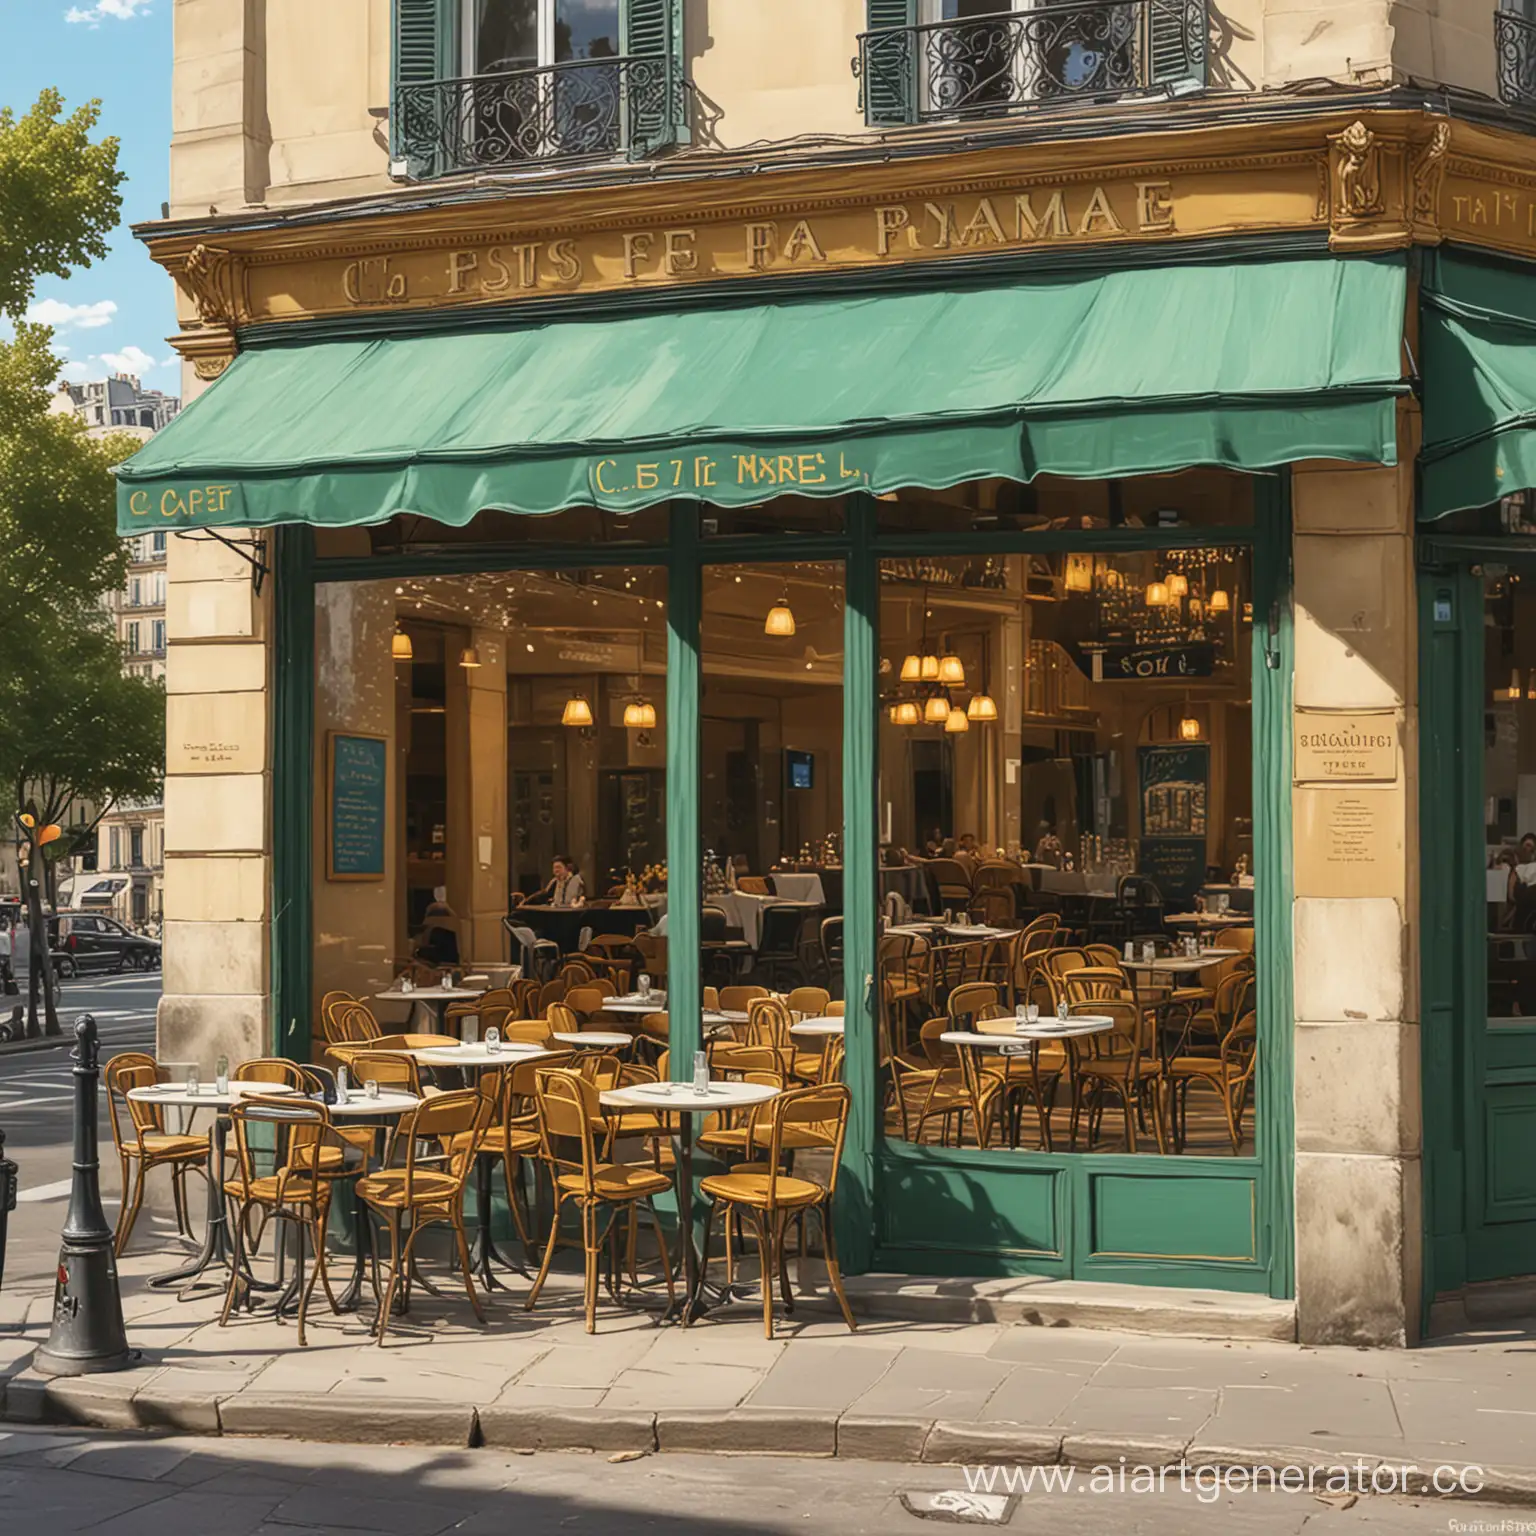 Нарисуй изображение в стиле Ван Гога, которое показывает роскошное кафе с летней верандой на набережной Парижа, сквозь витрины кафе видно, что оно заполнено довольными посетителями, а на вывеске над витриной написано “C’est pour ma pomme”.